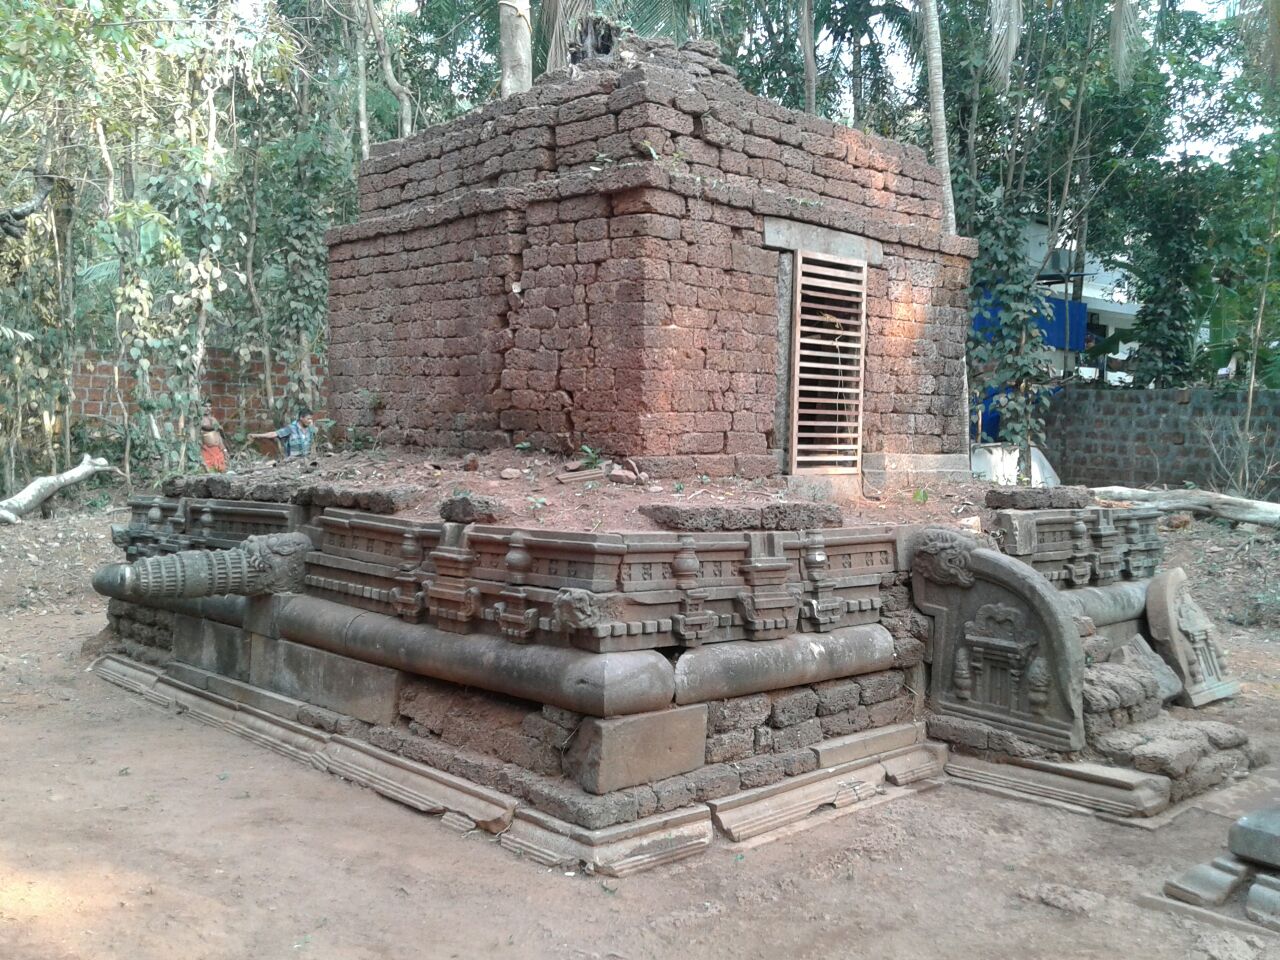 மலப்புரம் நாராயணன் கோயில், கேரளா